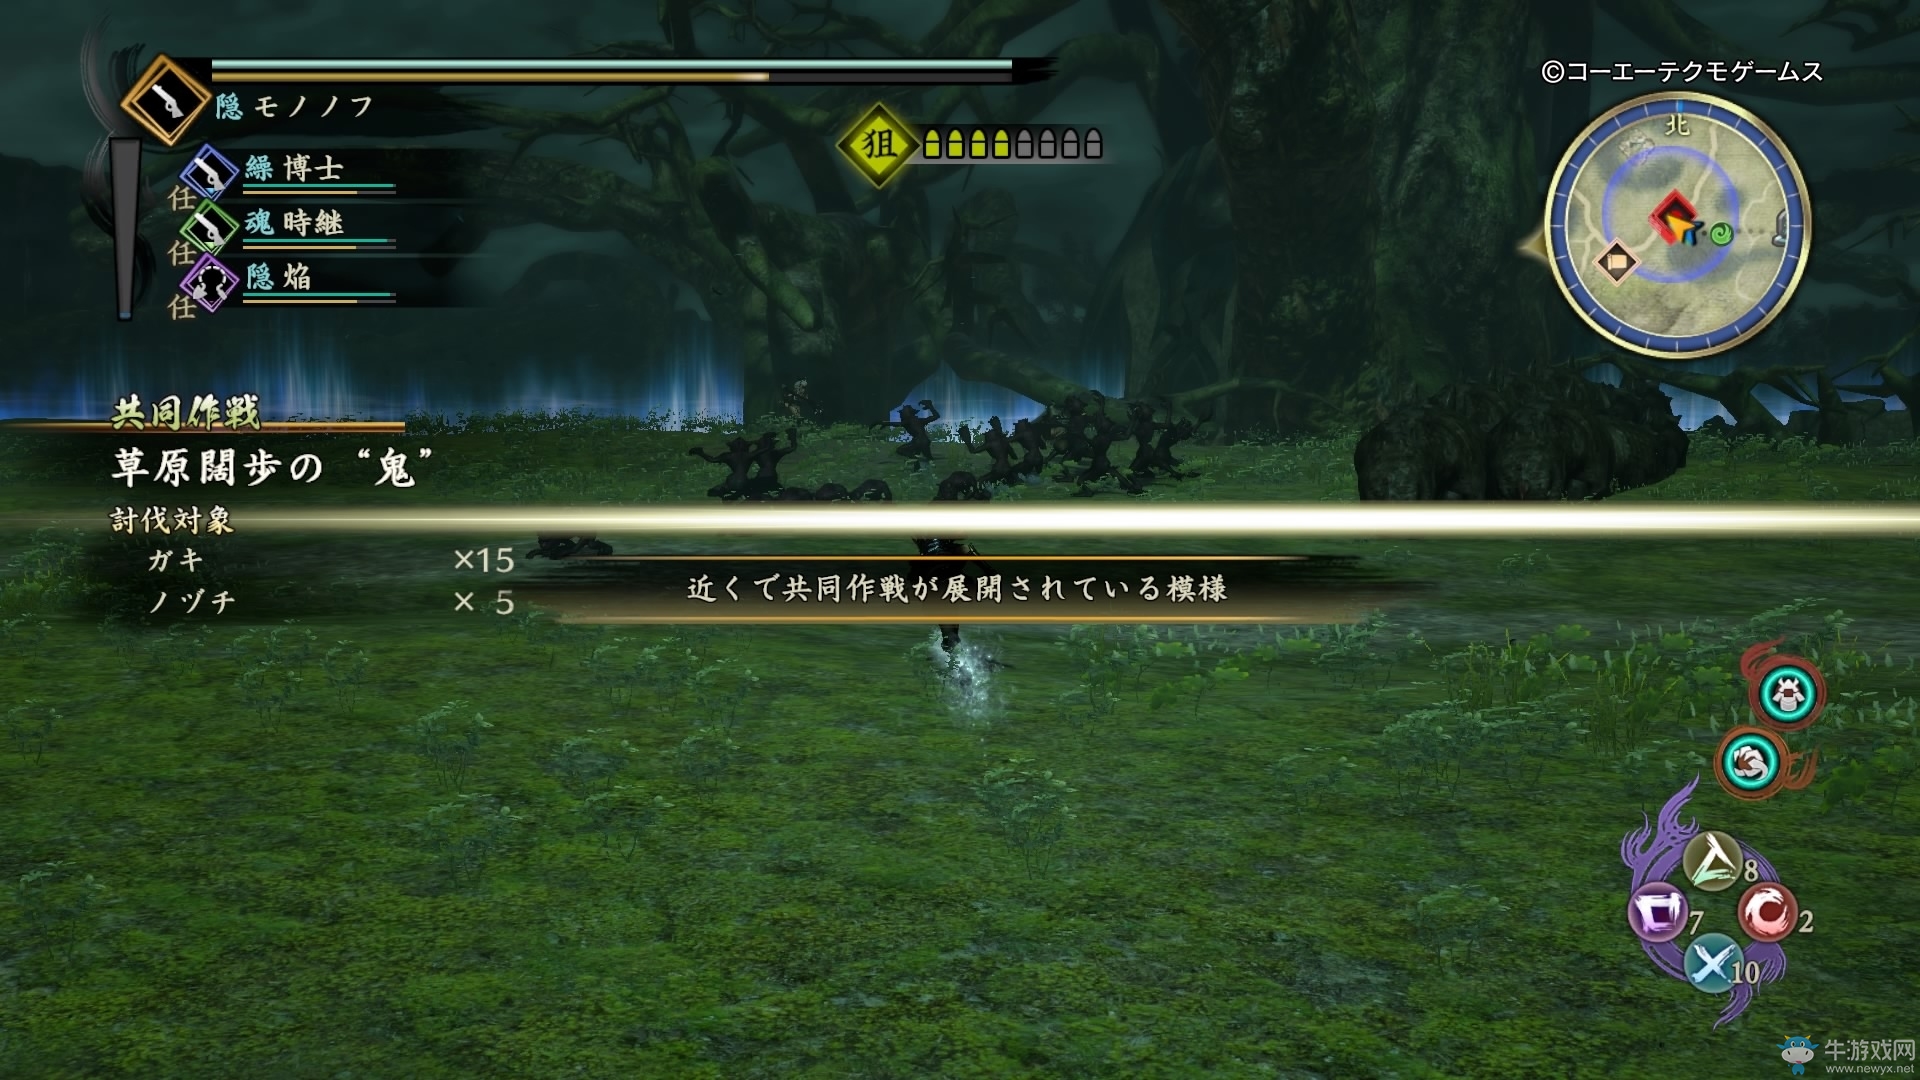 《讨鬼传2》游戏试玩评测 少见的开放世界狩猎动作游戏